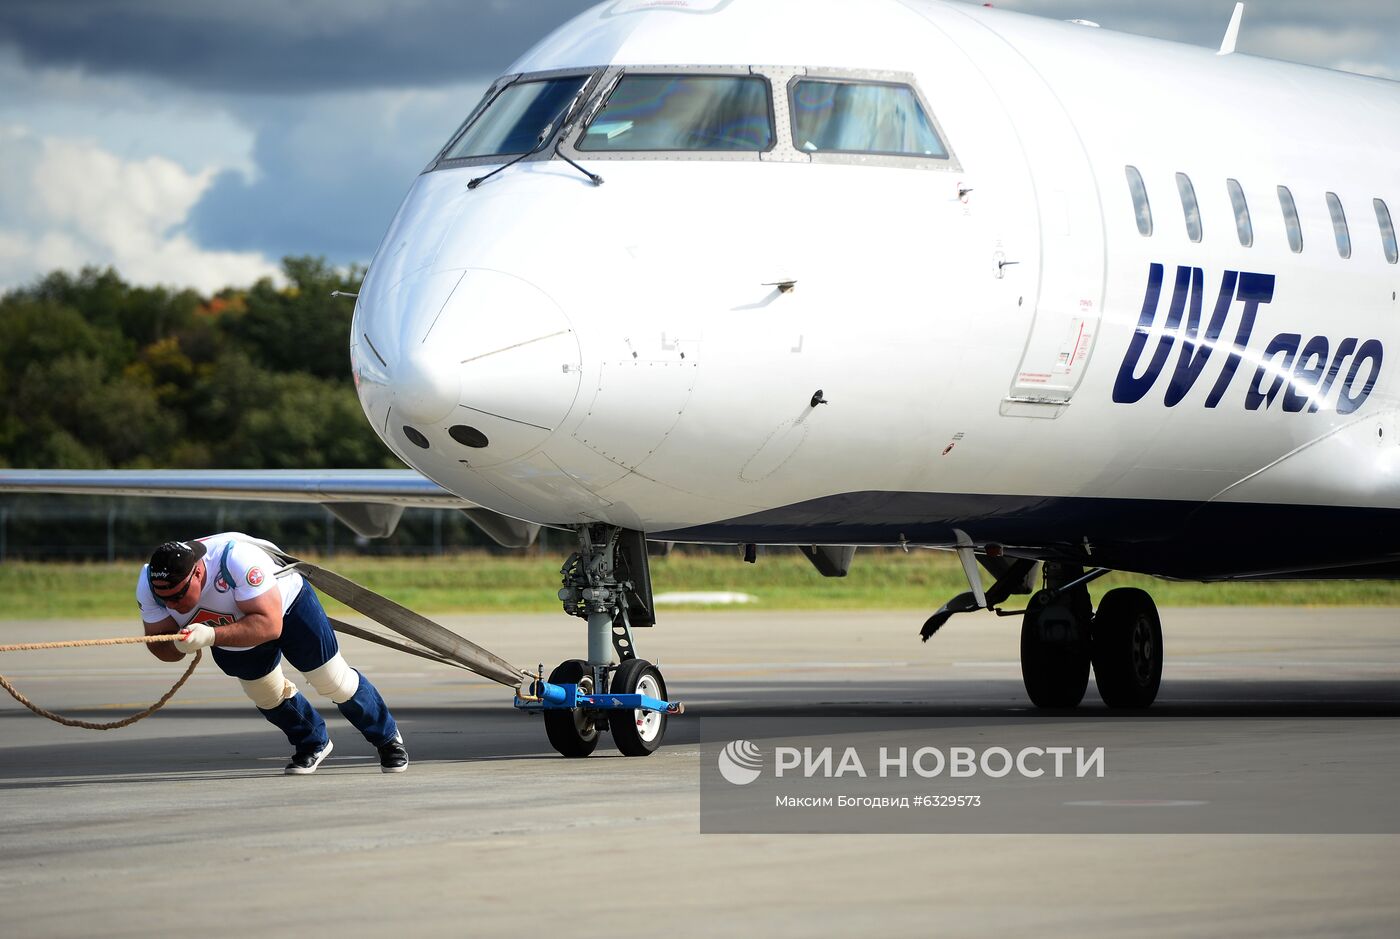 Российский атлет установил рекорд по буксировке самолета в честь 100-летия Татарской АССР